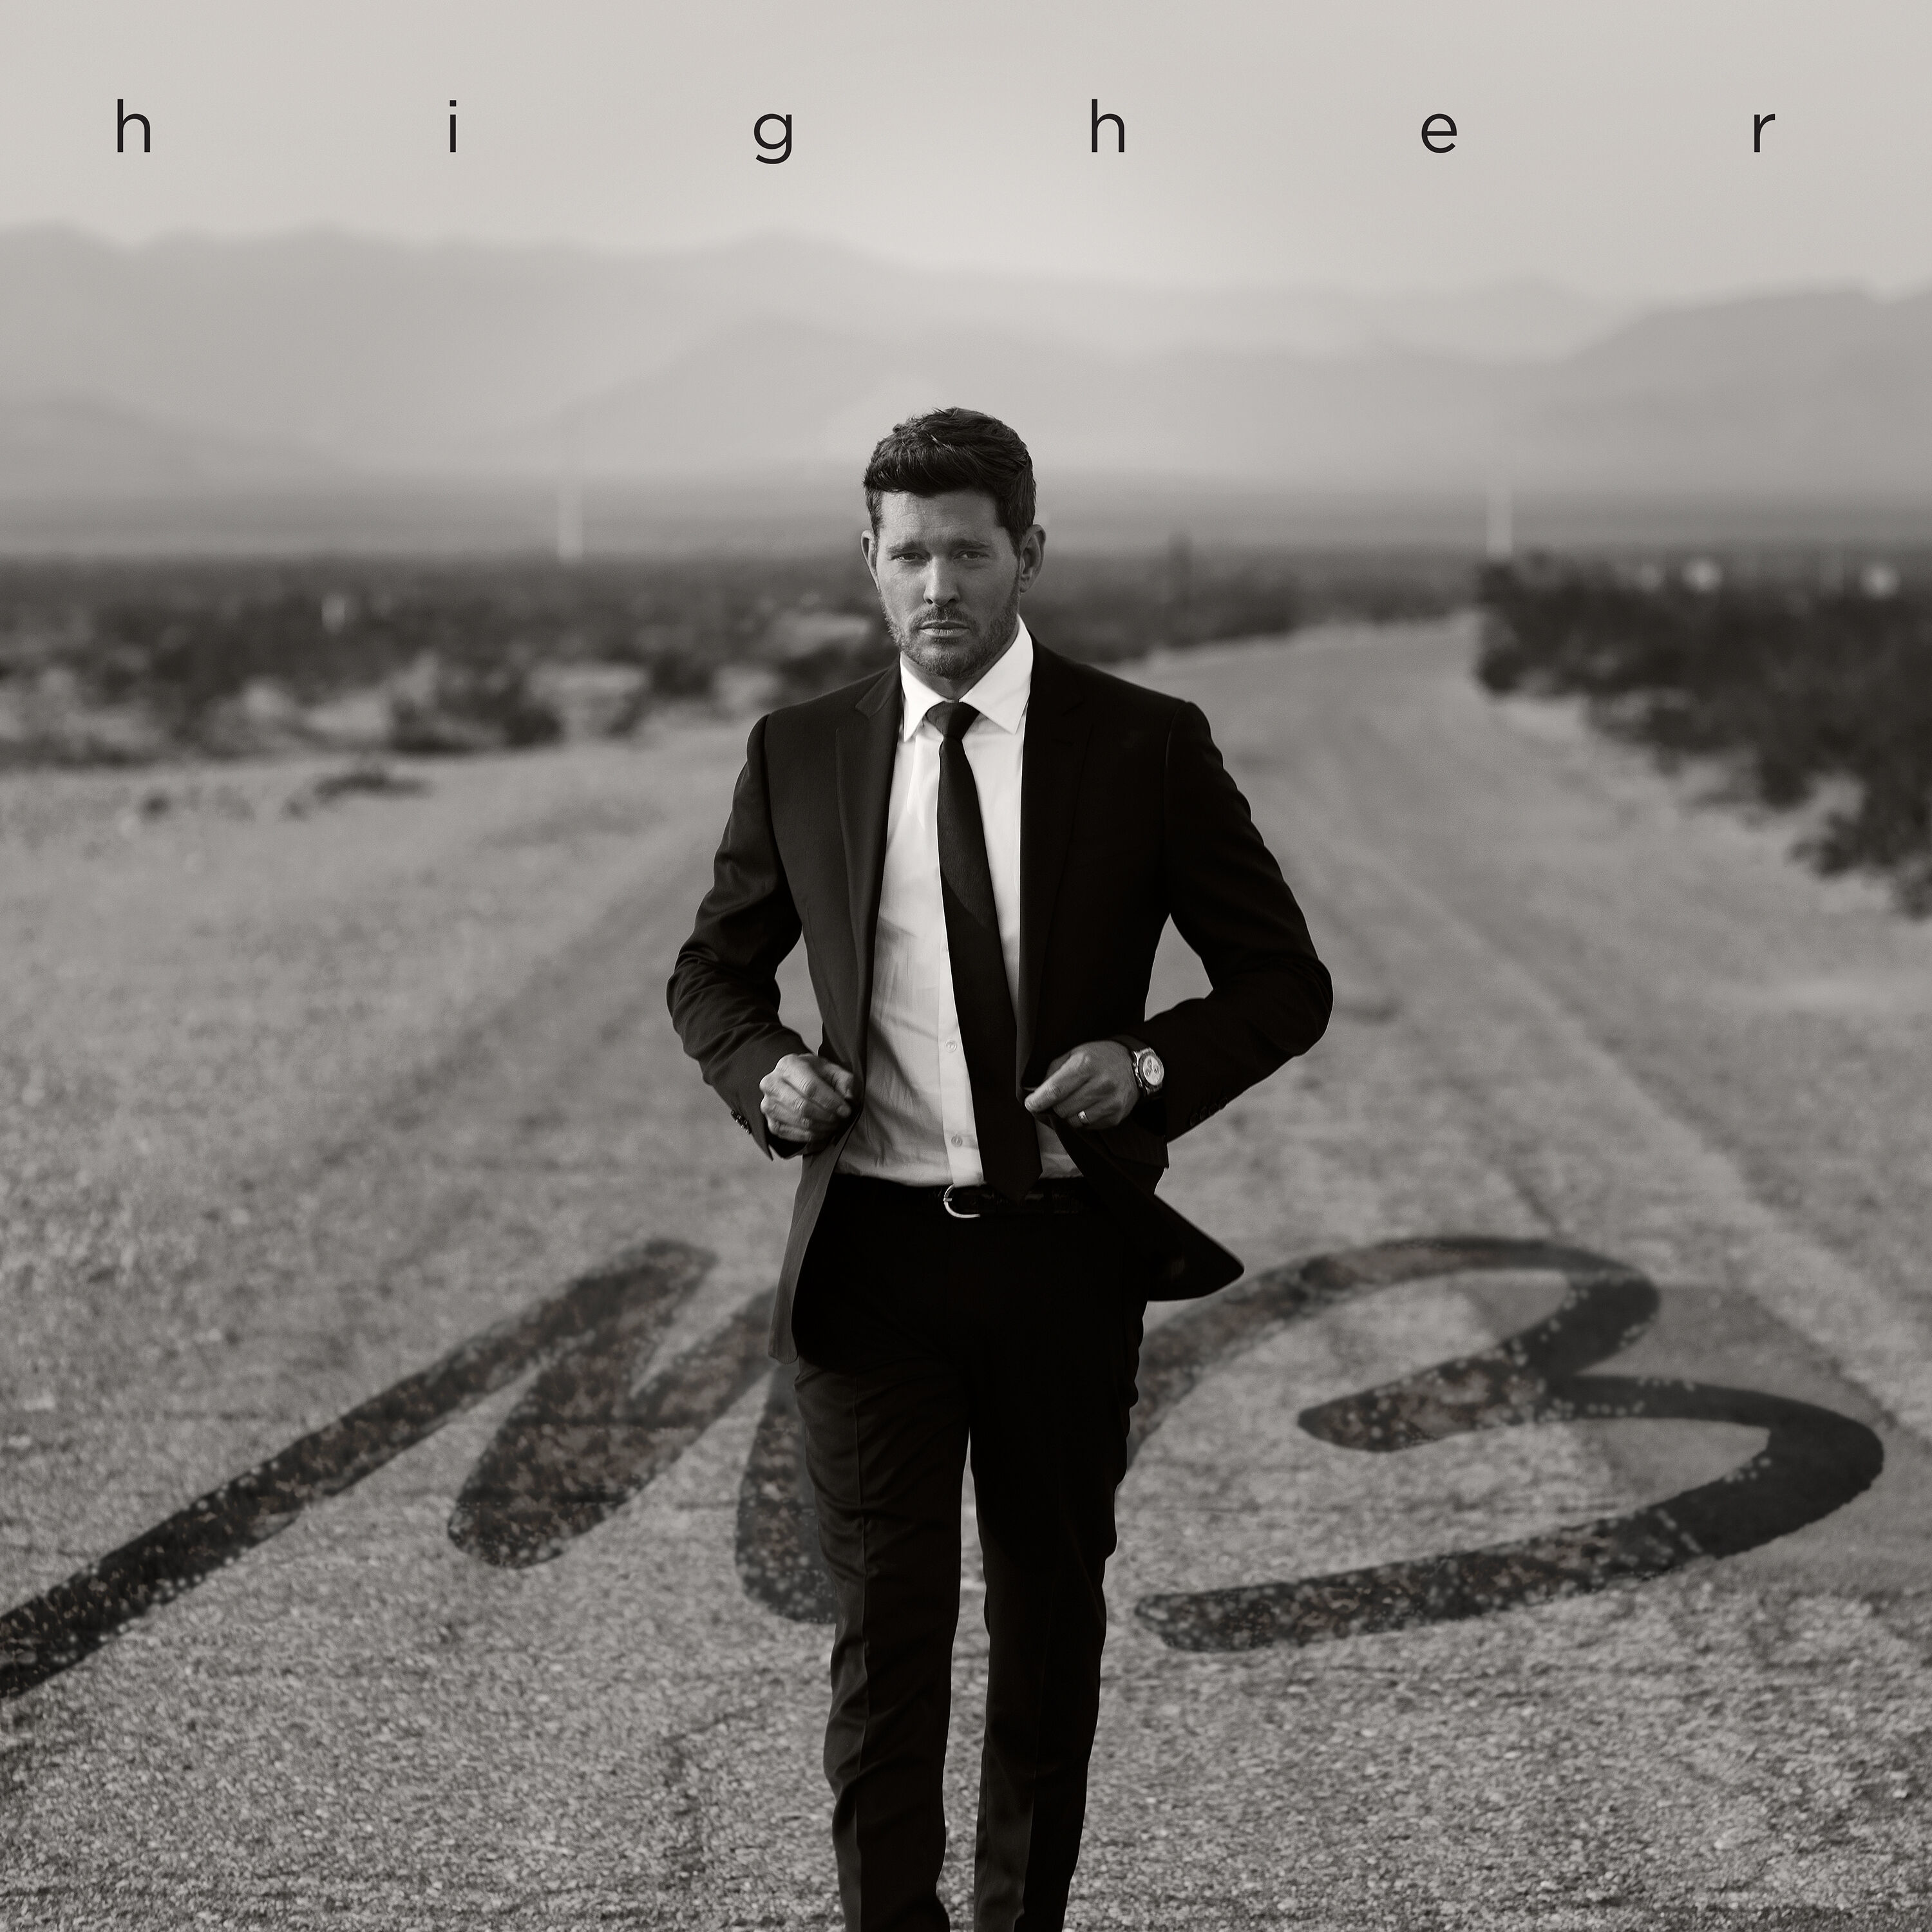 Michael Bublé - Higher (Deluxe) (2022) [FLAC 24bit/44,1kHz]